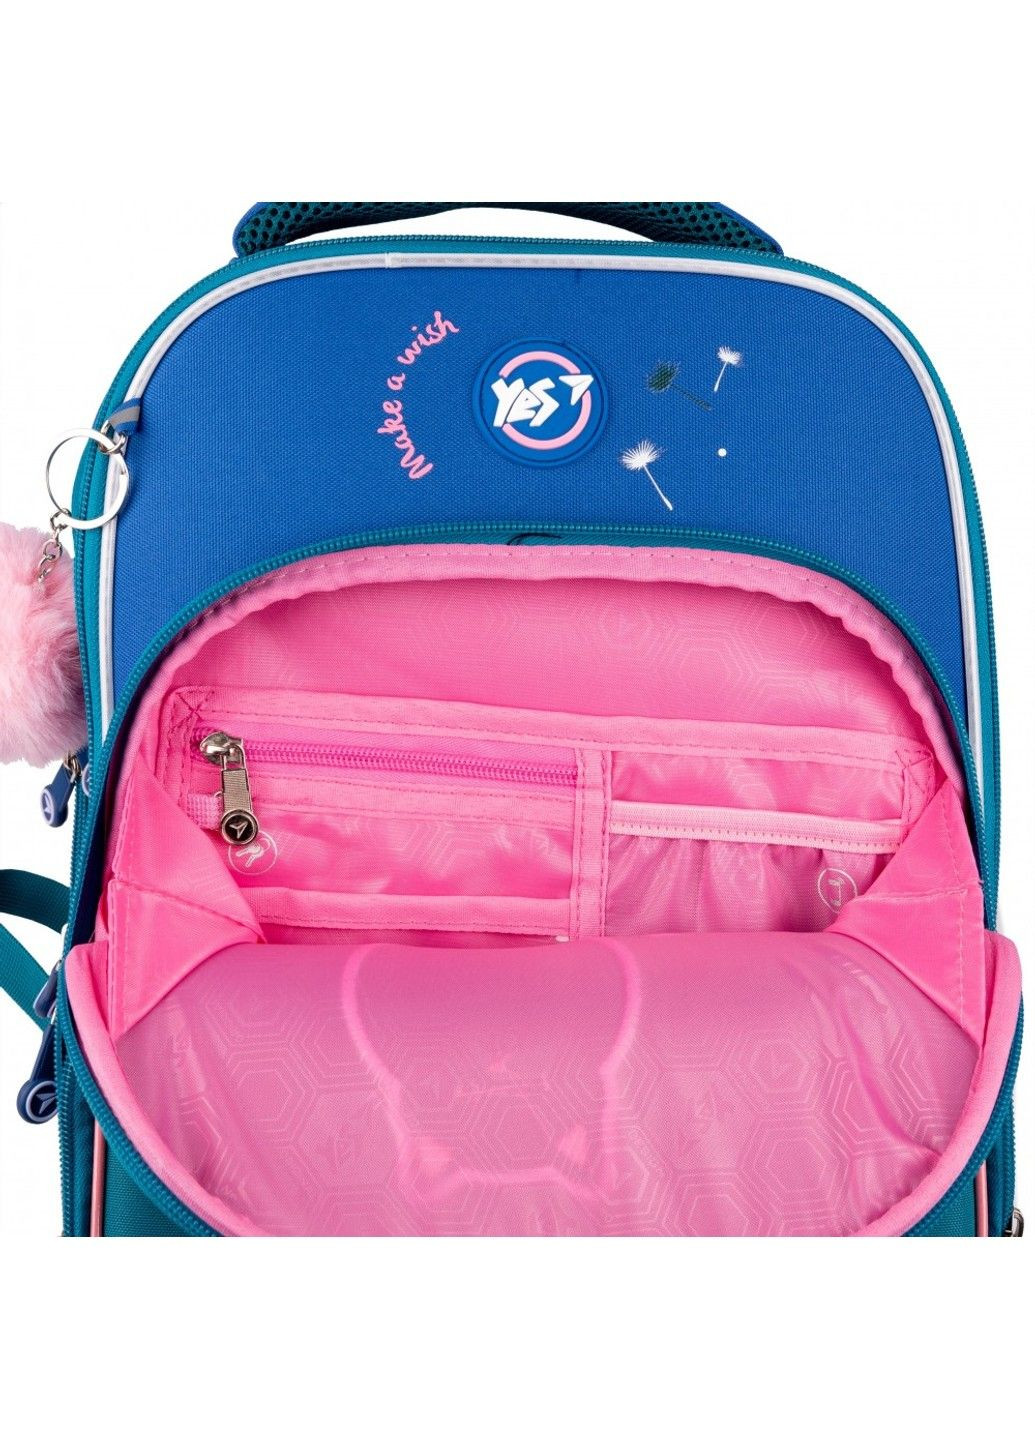 Рюкзак школьный для младших классов S-78 Dandelion Cats Yes (278404497)